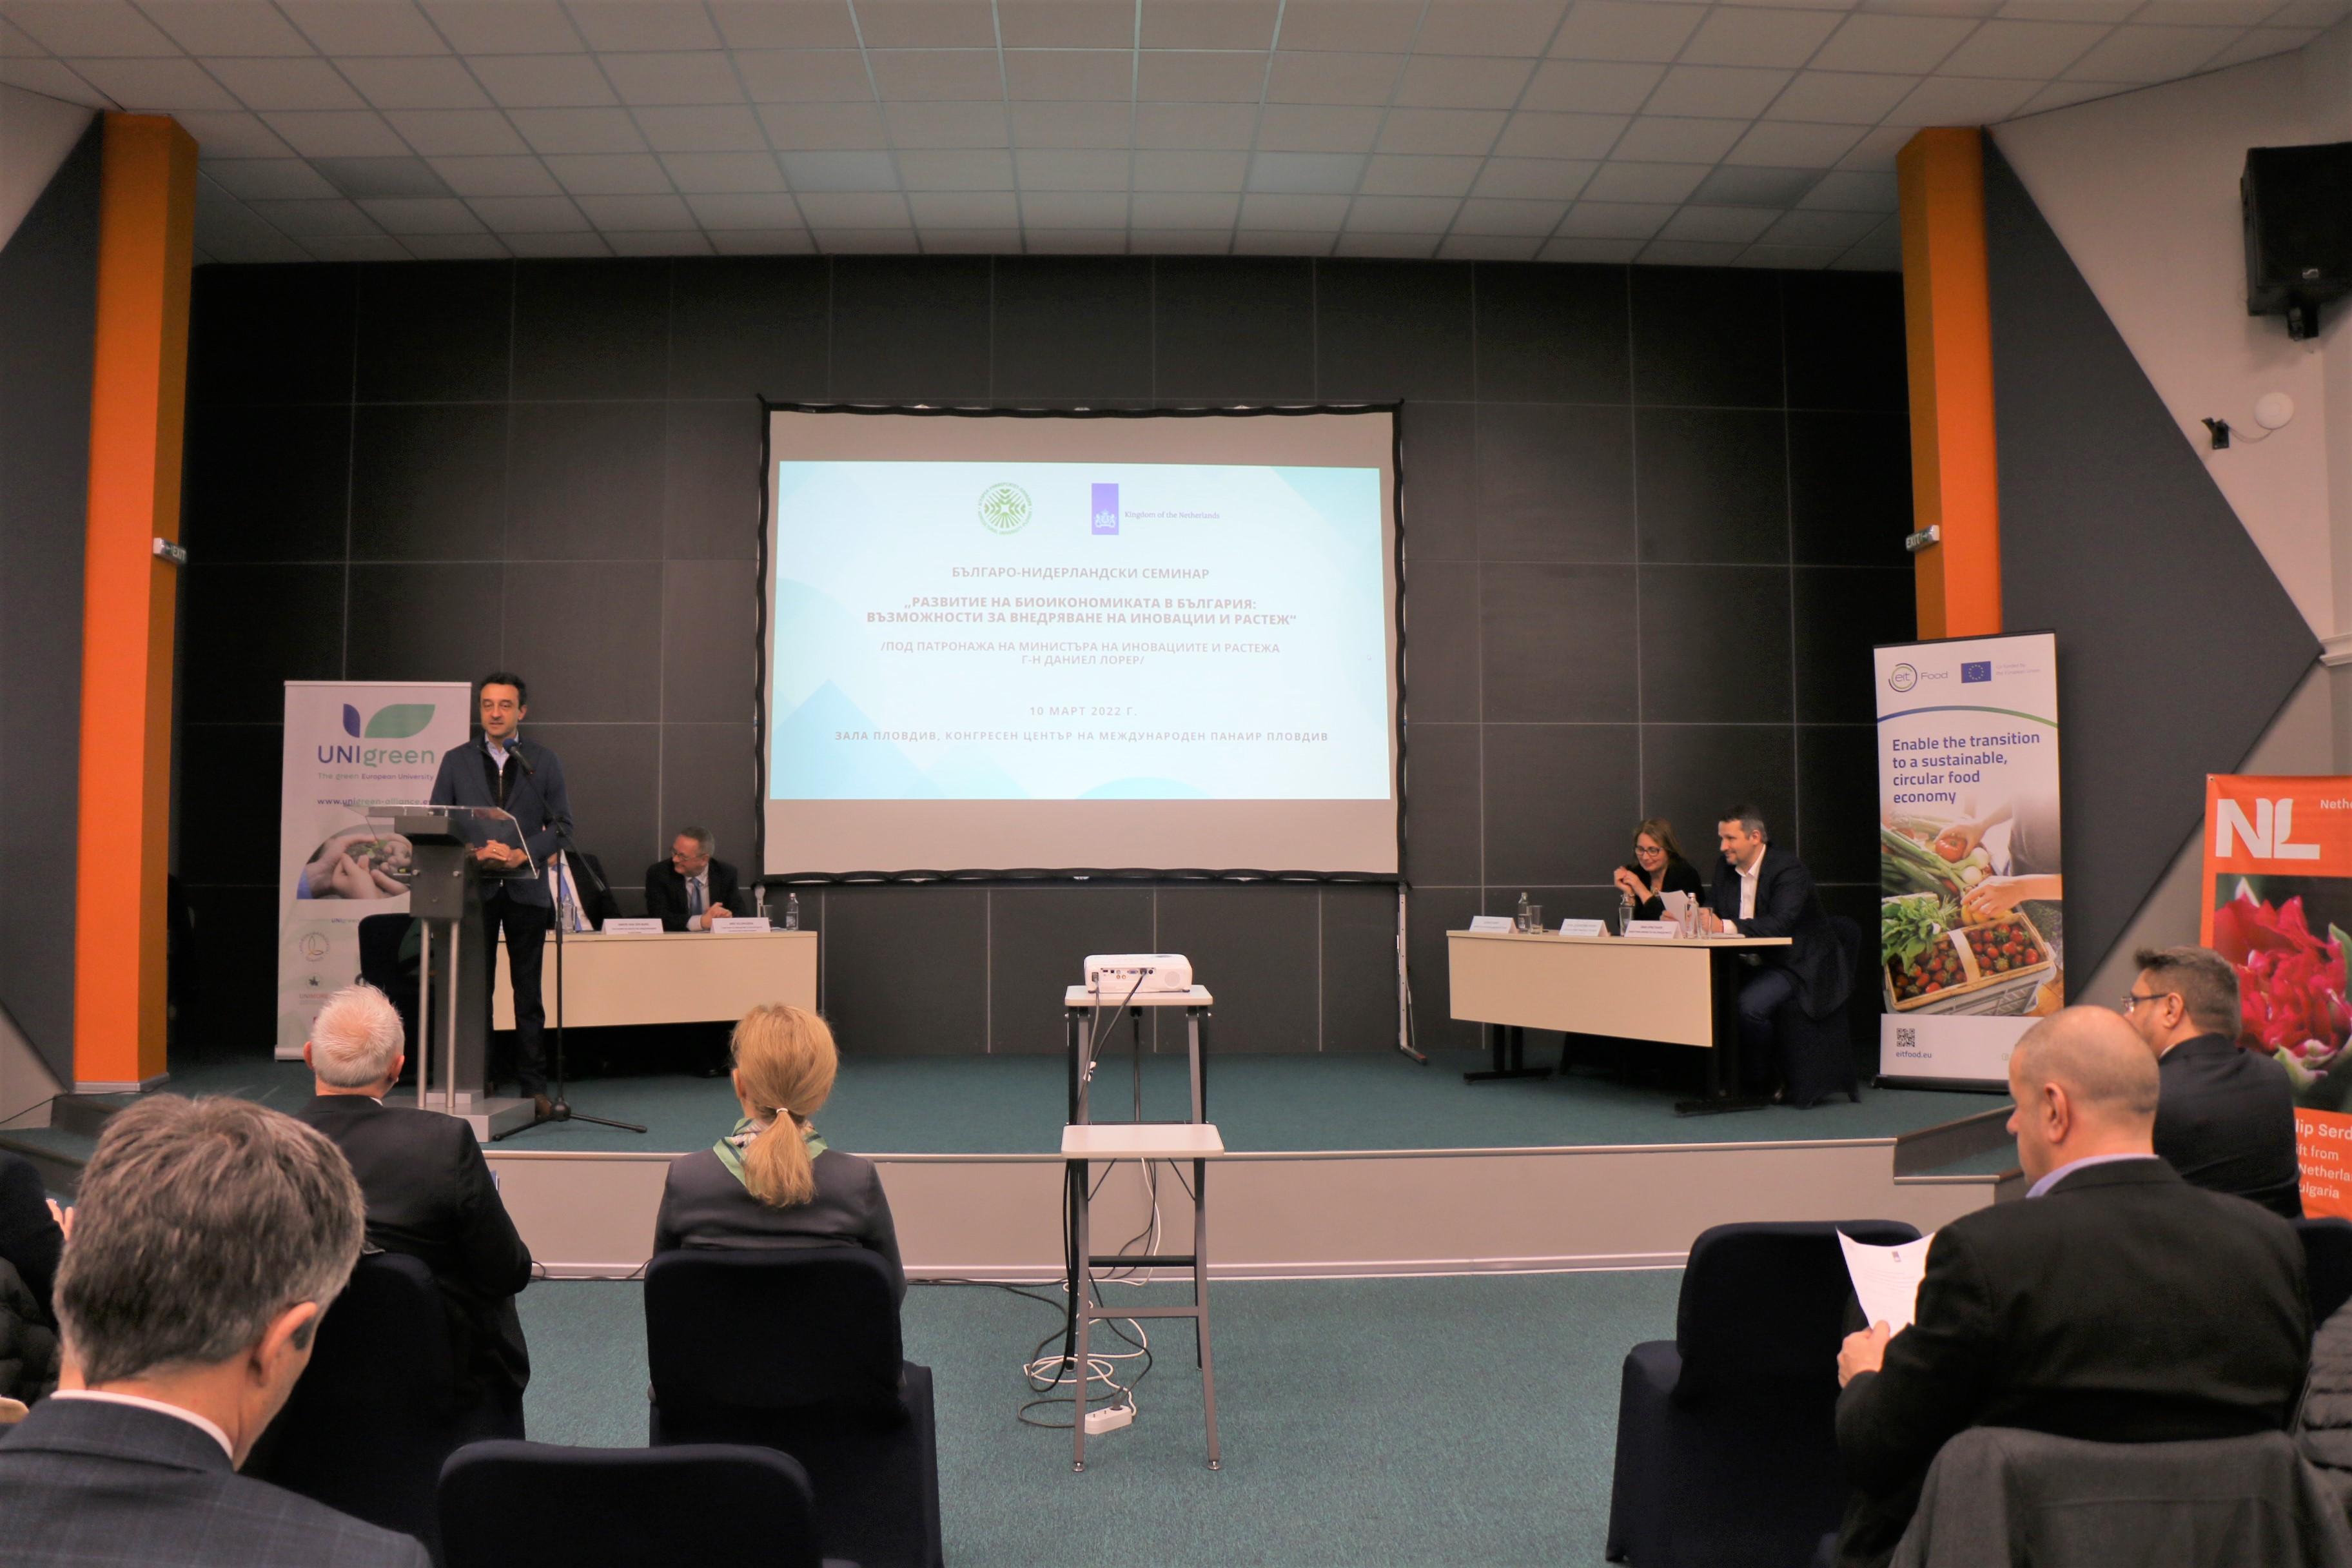 Кръгова биоикономика и иновации бяха темите на Българо-нидерландски семинар, организиран от Аграрен университет